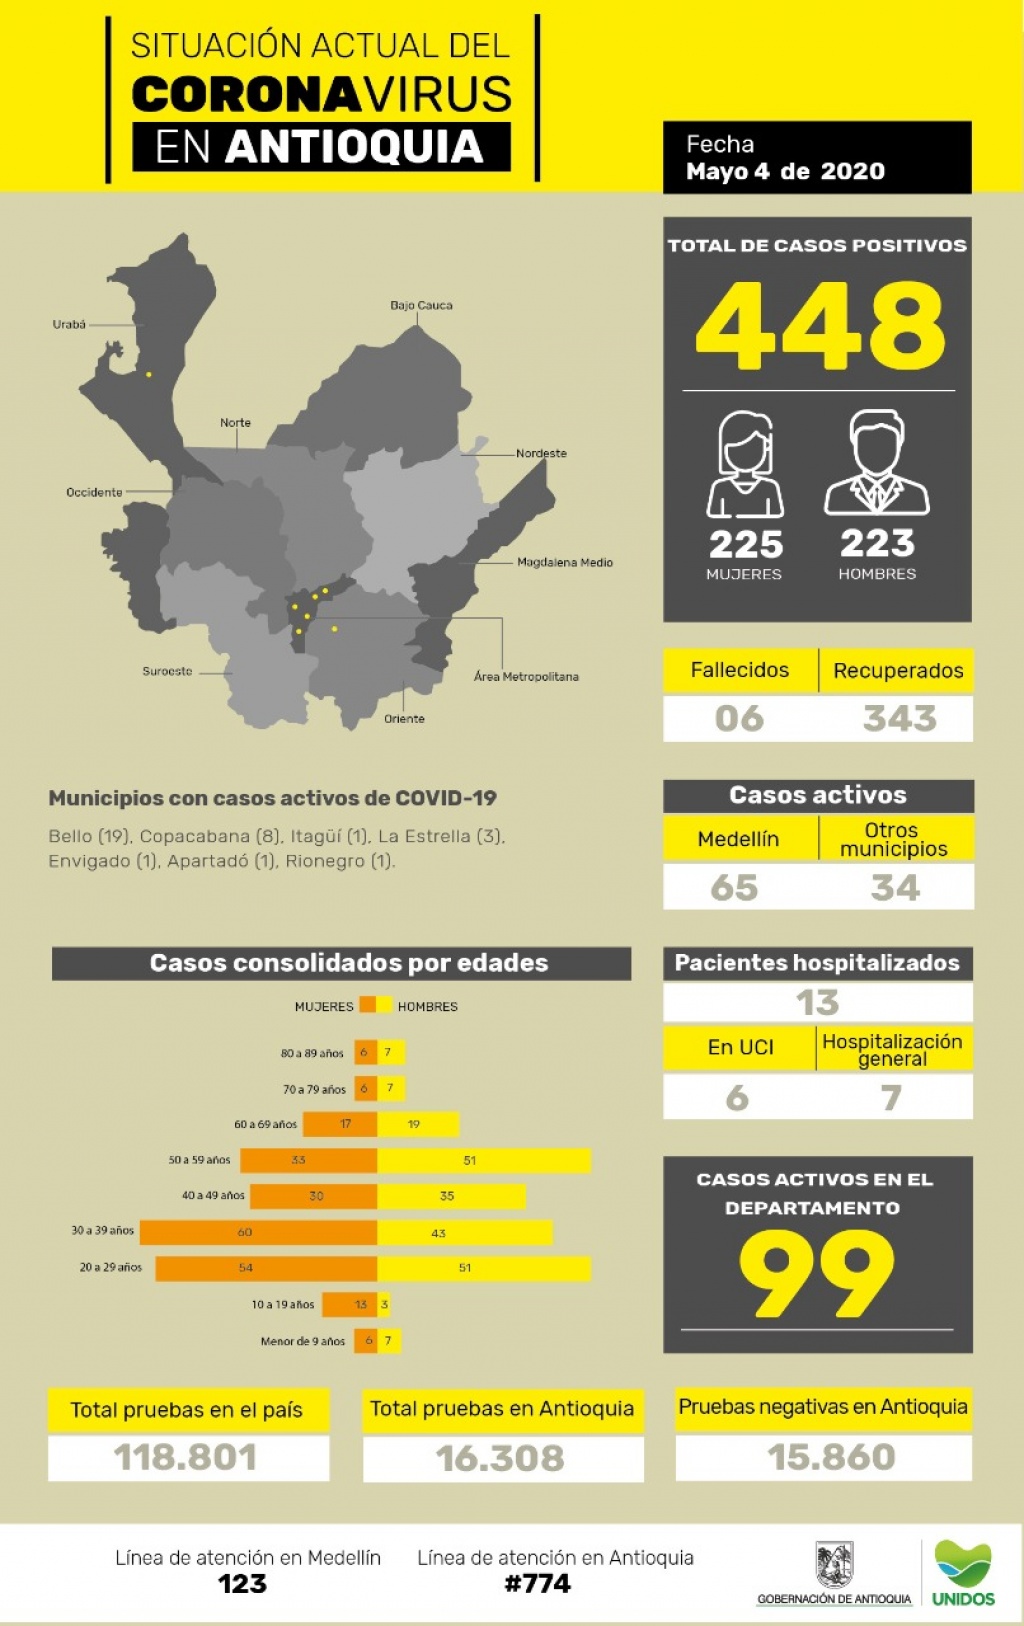 Con 5 nuevos casos reportados, el número total de personas contagiadas por COVID-19 en Antioquia asciende a 448